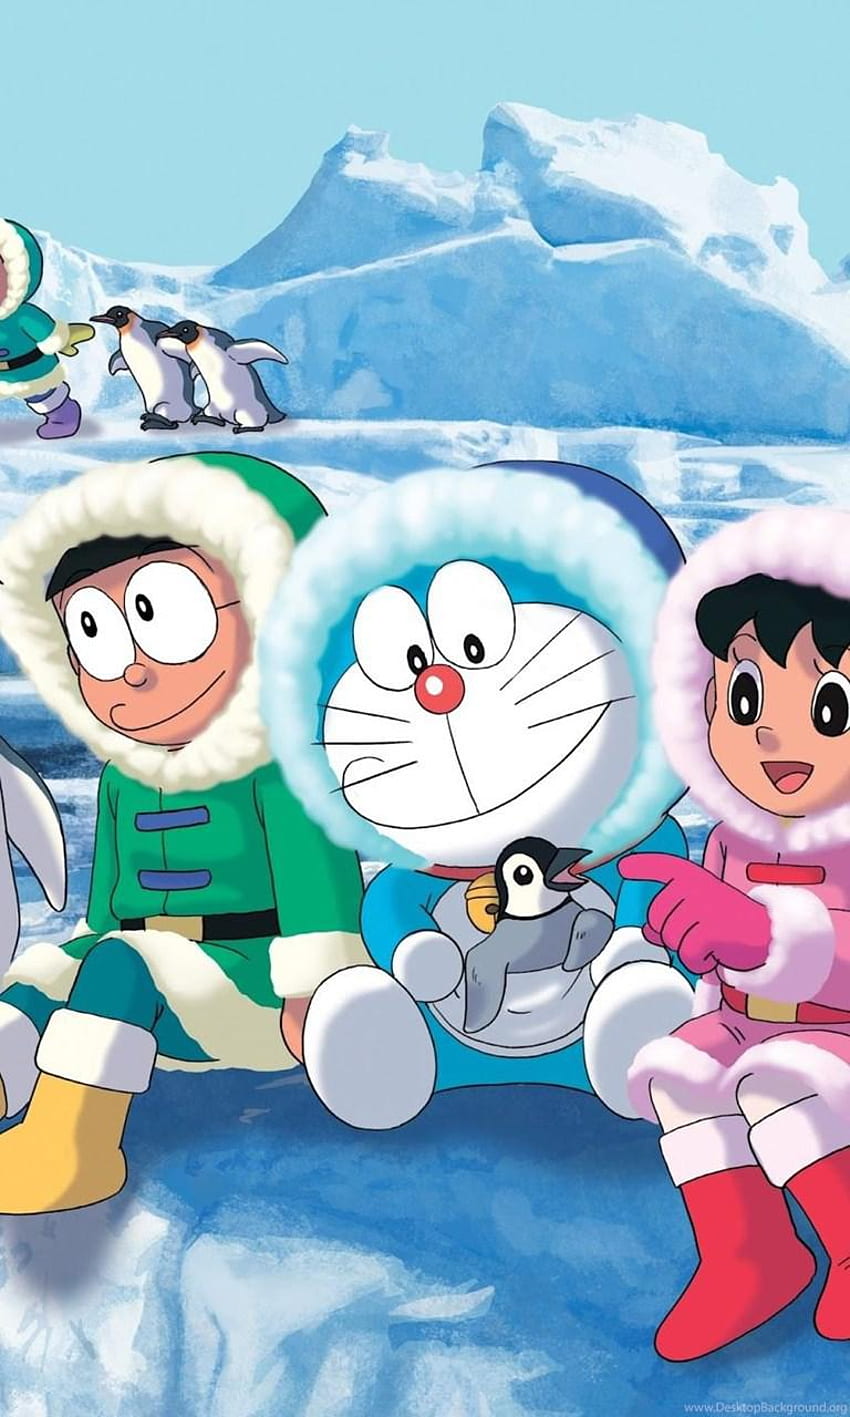 Chào mừng đến với thế giới của Doraemon! Bạn sẽ được trải nghiệm chuyến đi phiêu lưu vô cùng độc đáo và thú vị thông qua những hình nền Doraemon cho iPhone. Từ những hình ảnh dễ thương, đến những chi tiết sắc nét và màu sắc rực rỡ, bạn sẽ không muốn bỏ lỡ bất kỳ thứ gì!